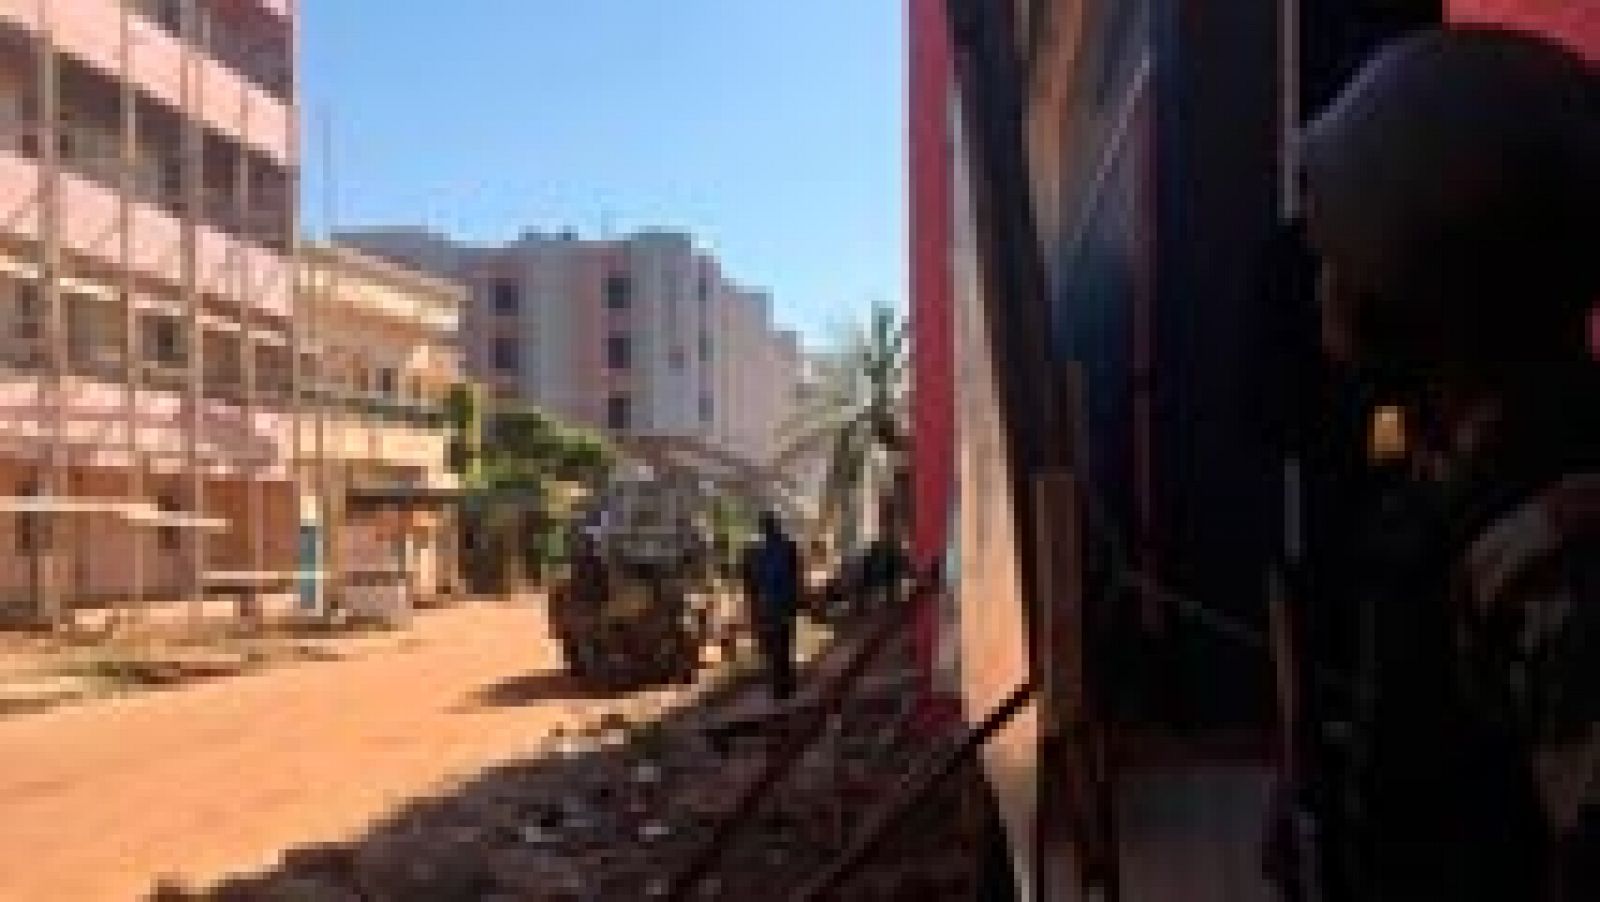 Atentado en Mali: Emilio Hernando, salesiano en Bamako: "Lo estábamos previendo"